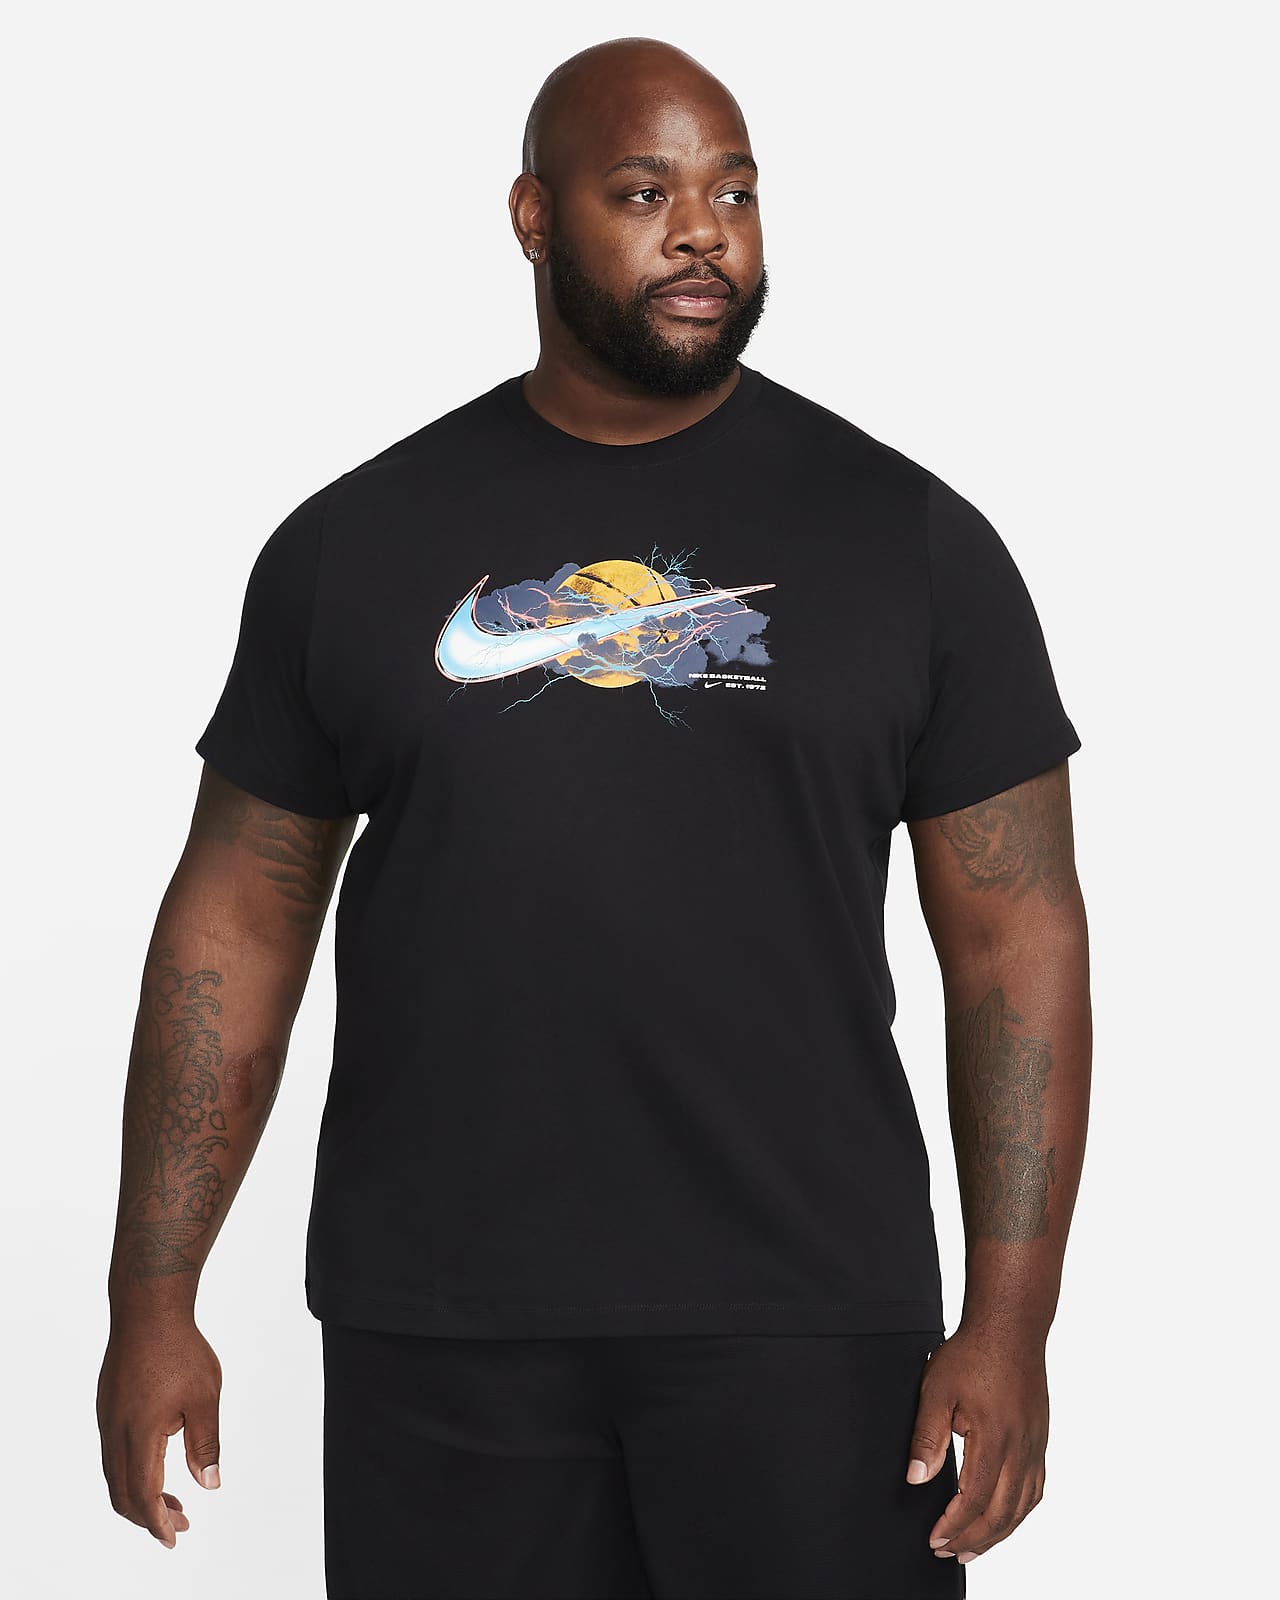 T-Shirt Homme Nike Basic Swoosh